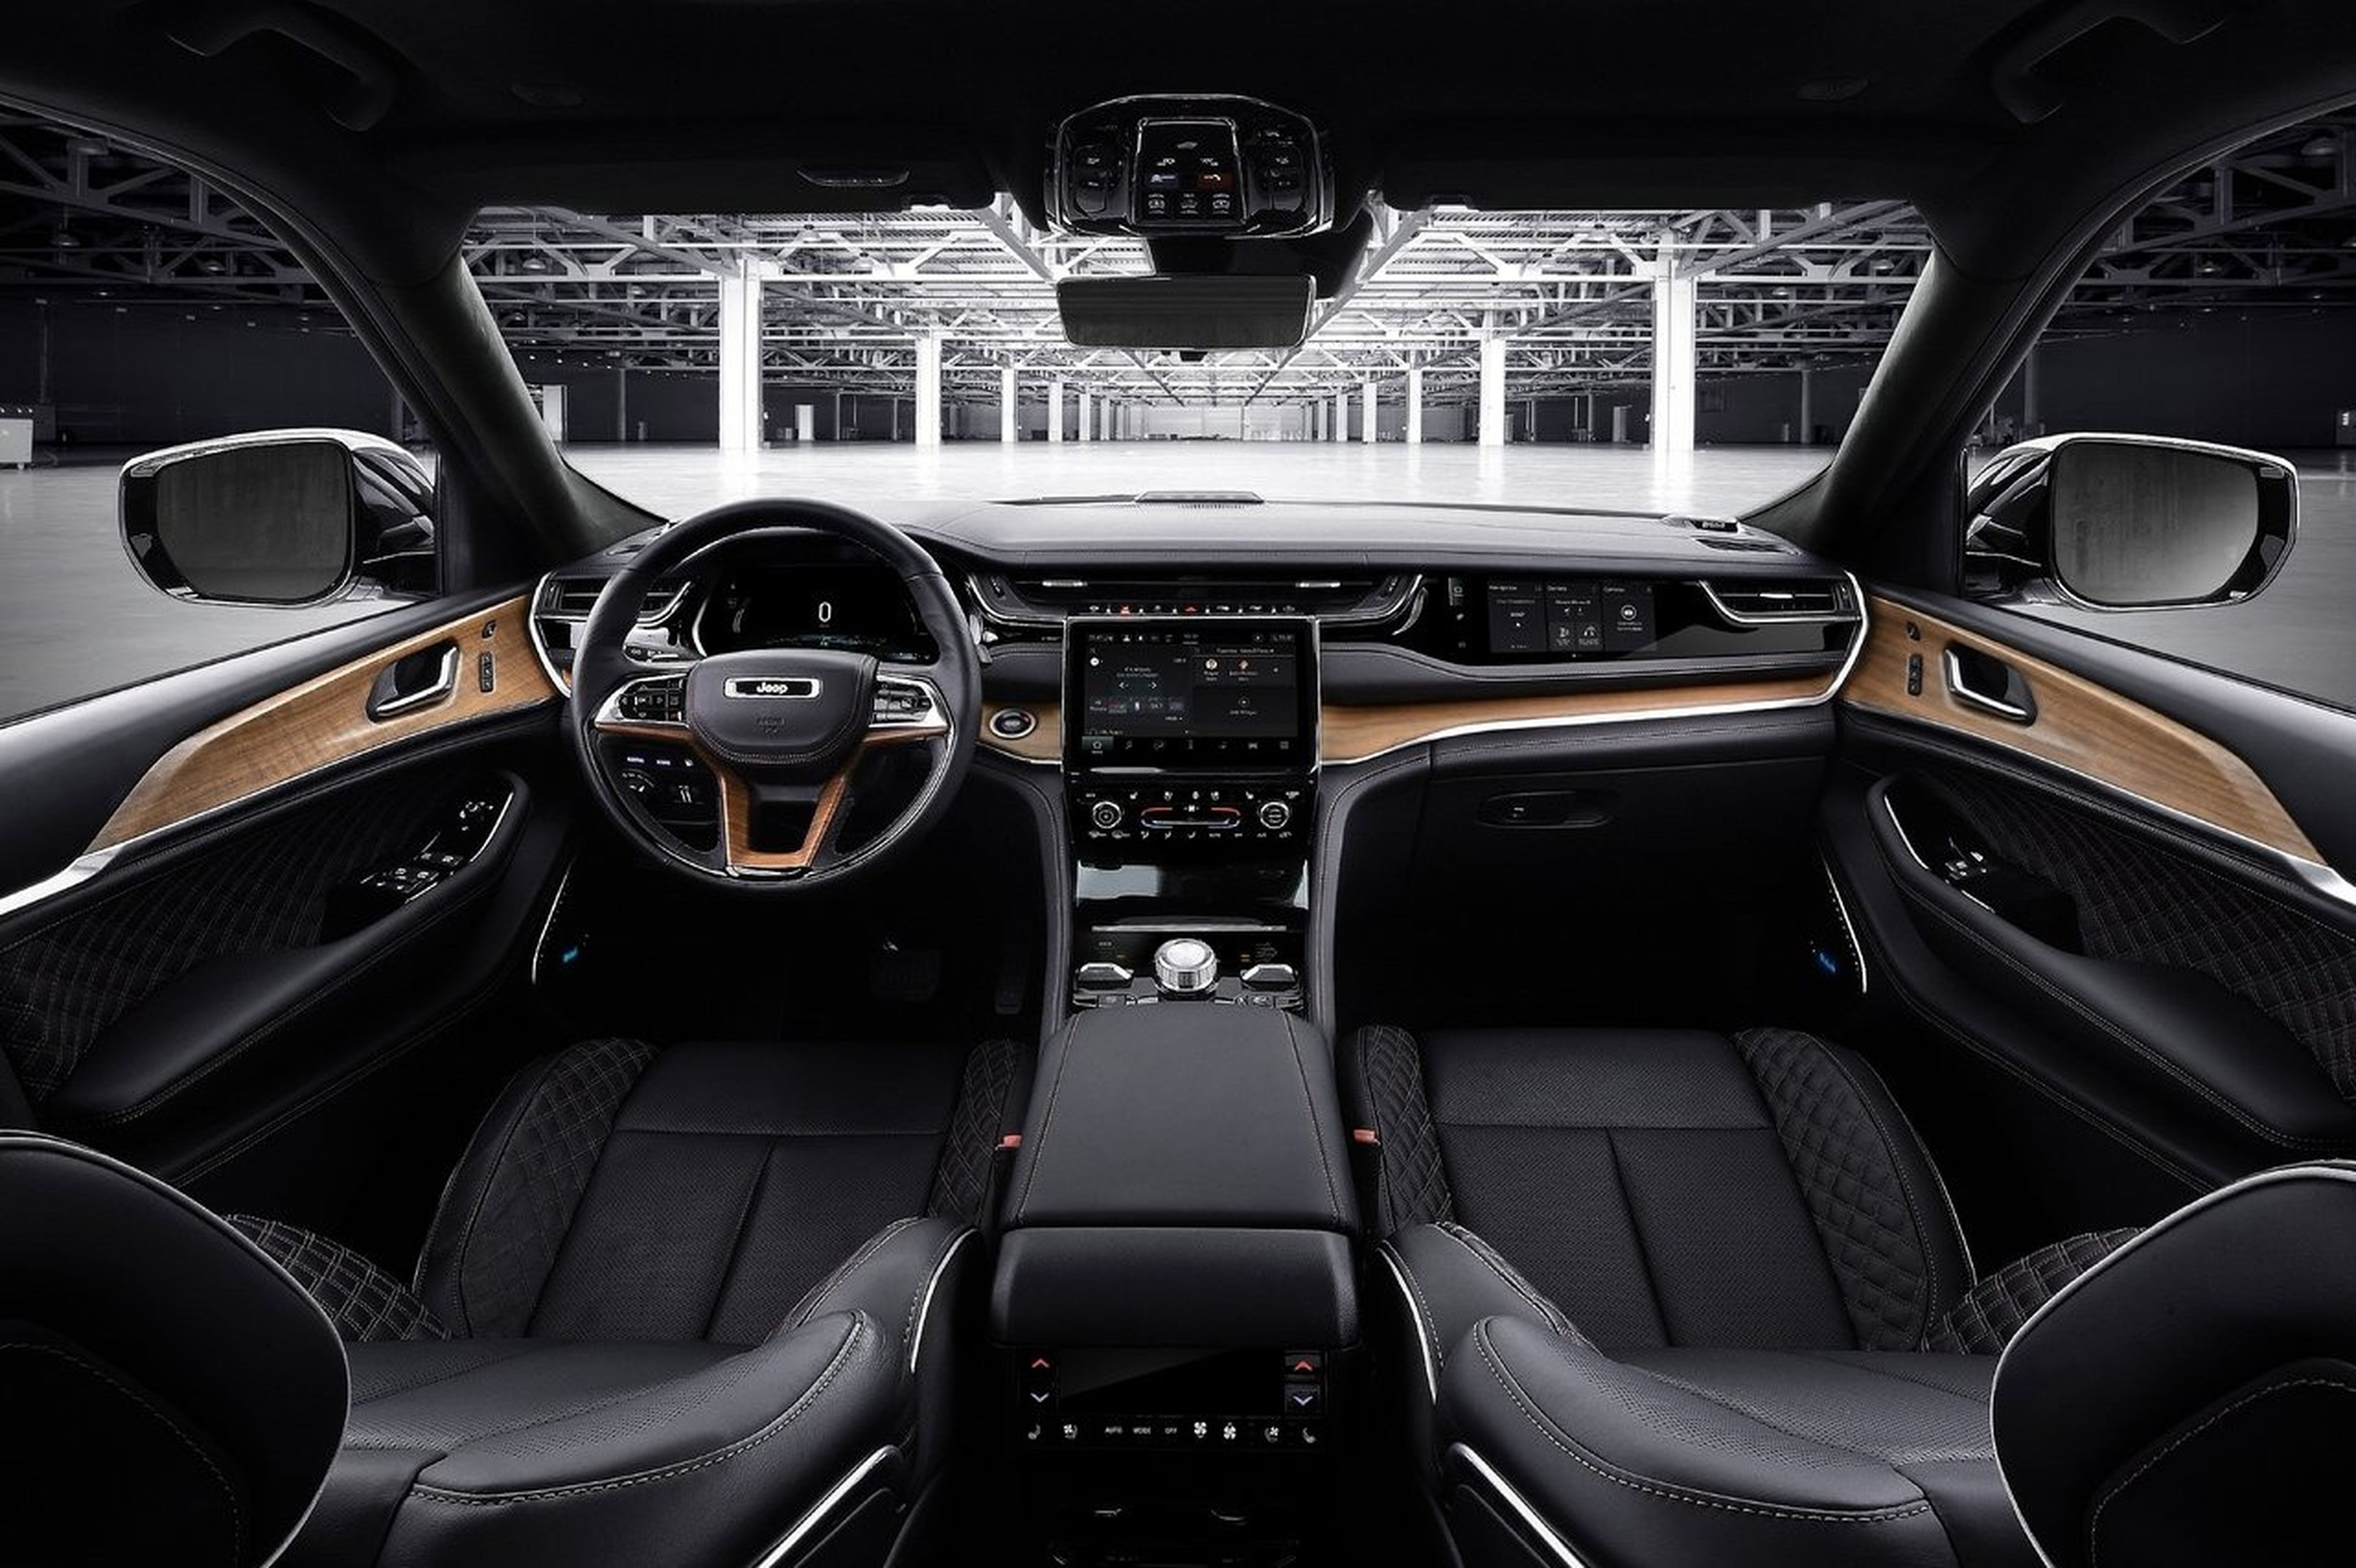 El interior del Jeep Grand Cherokee presenta un ambiente muy digitalizado.